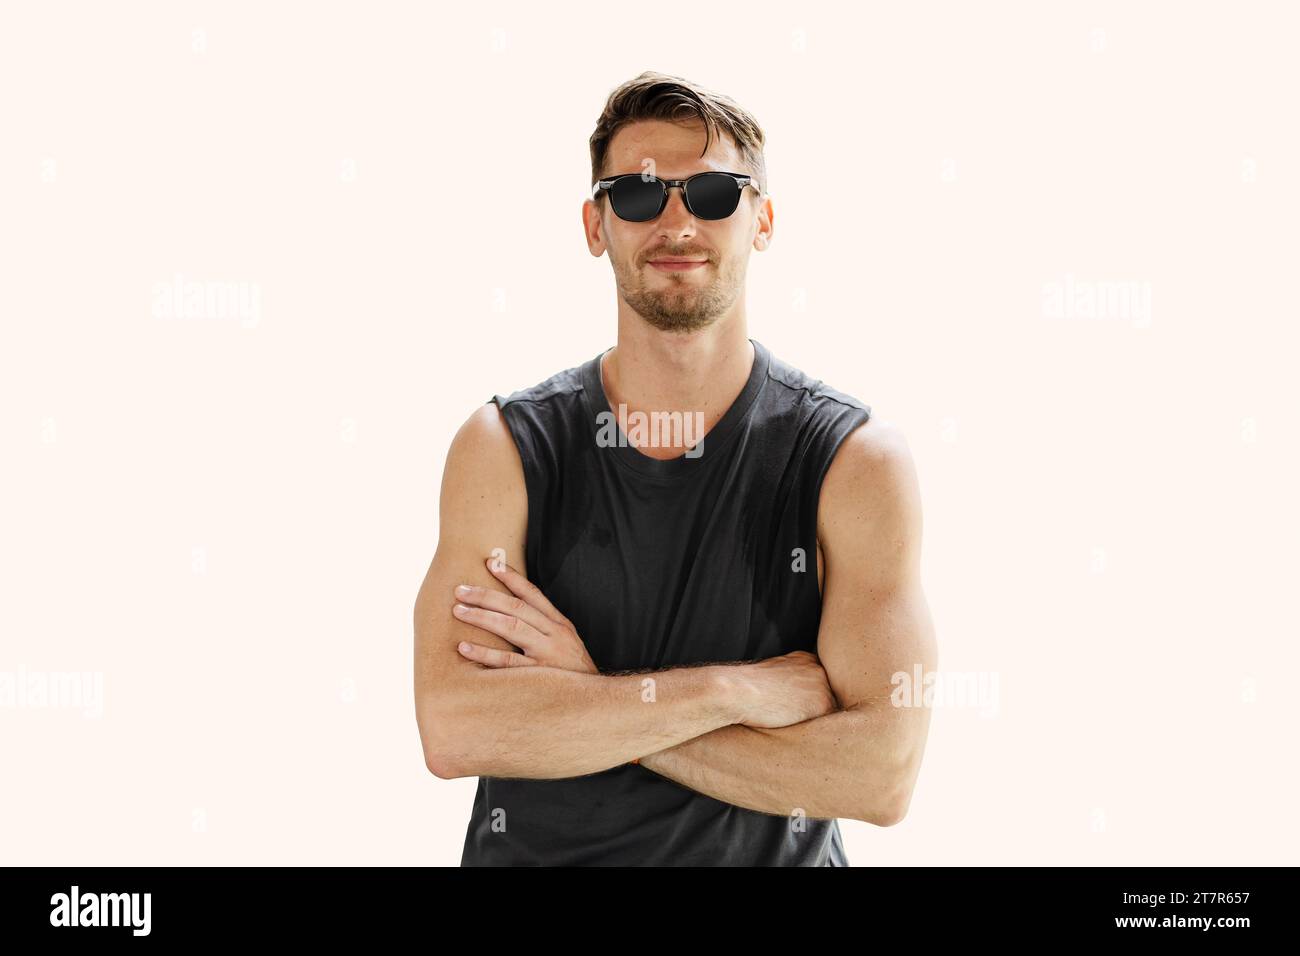 Junge smarte Hipster modische amerikanische männliche Sommer ärmellose T-Shirt Kleidung Sonnenbrille Steharm gekreuzt isoliert auf klarem Hintergrund Stockfoto